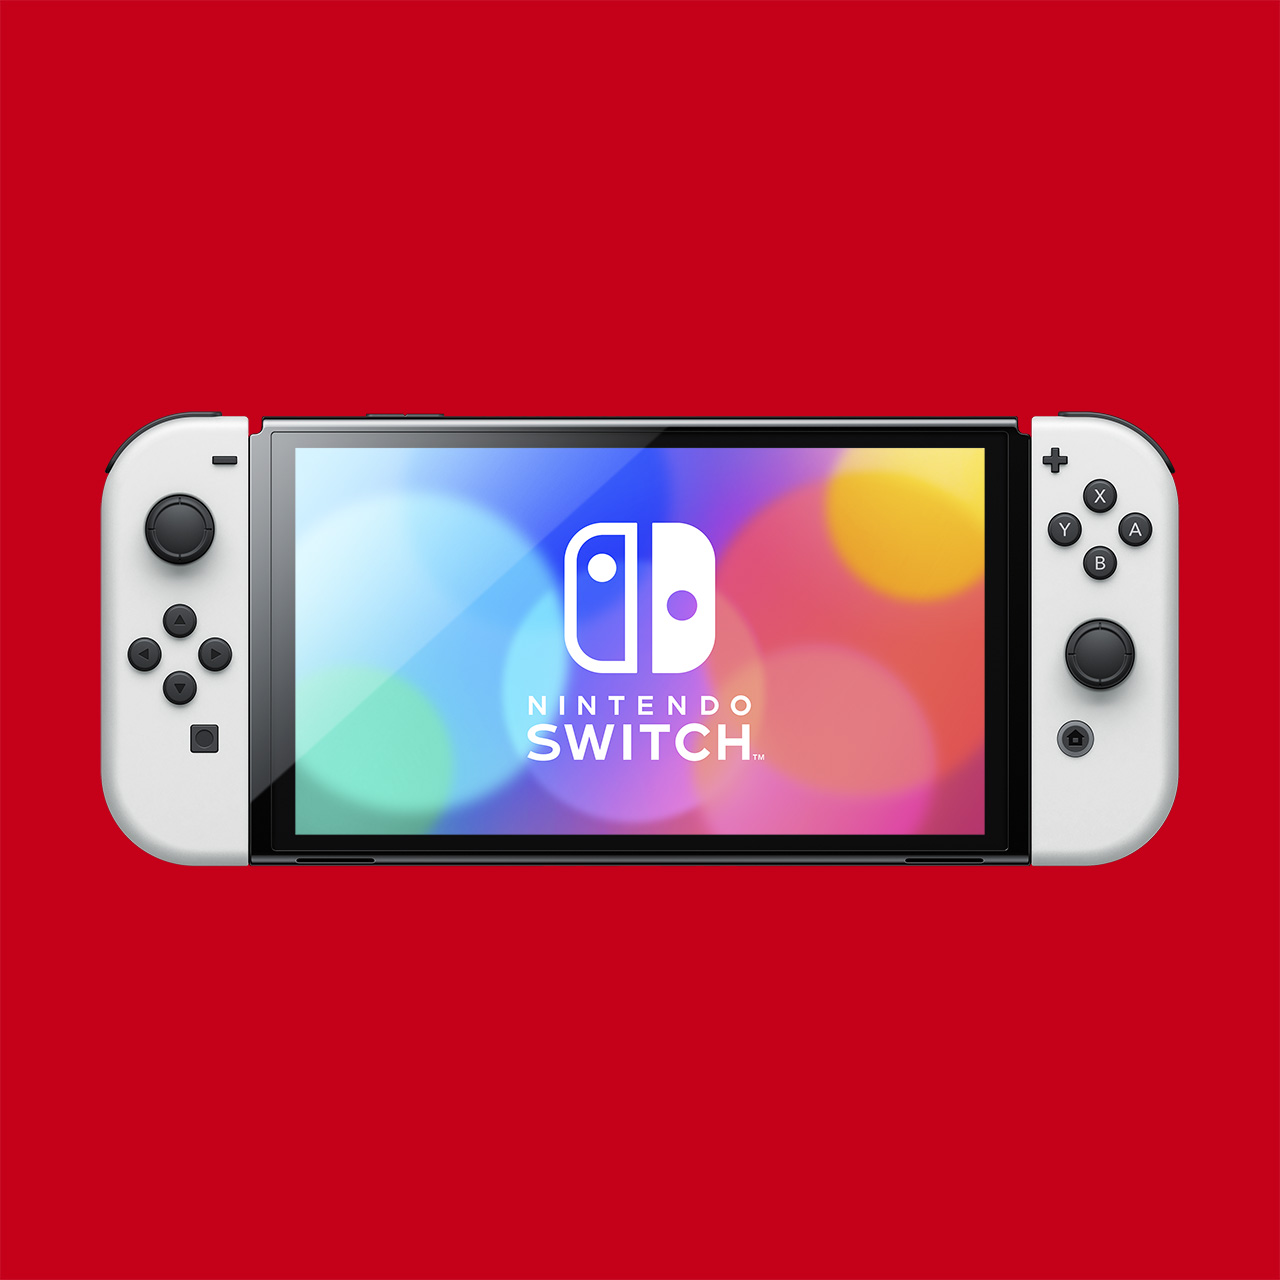 トイザらス Nintendo Switch 有機elモデル 抽選販売を実施 店舗にて9月24日より Game Watch